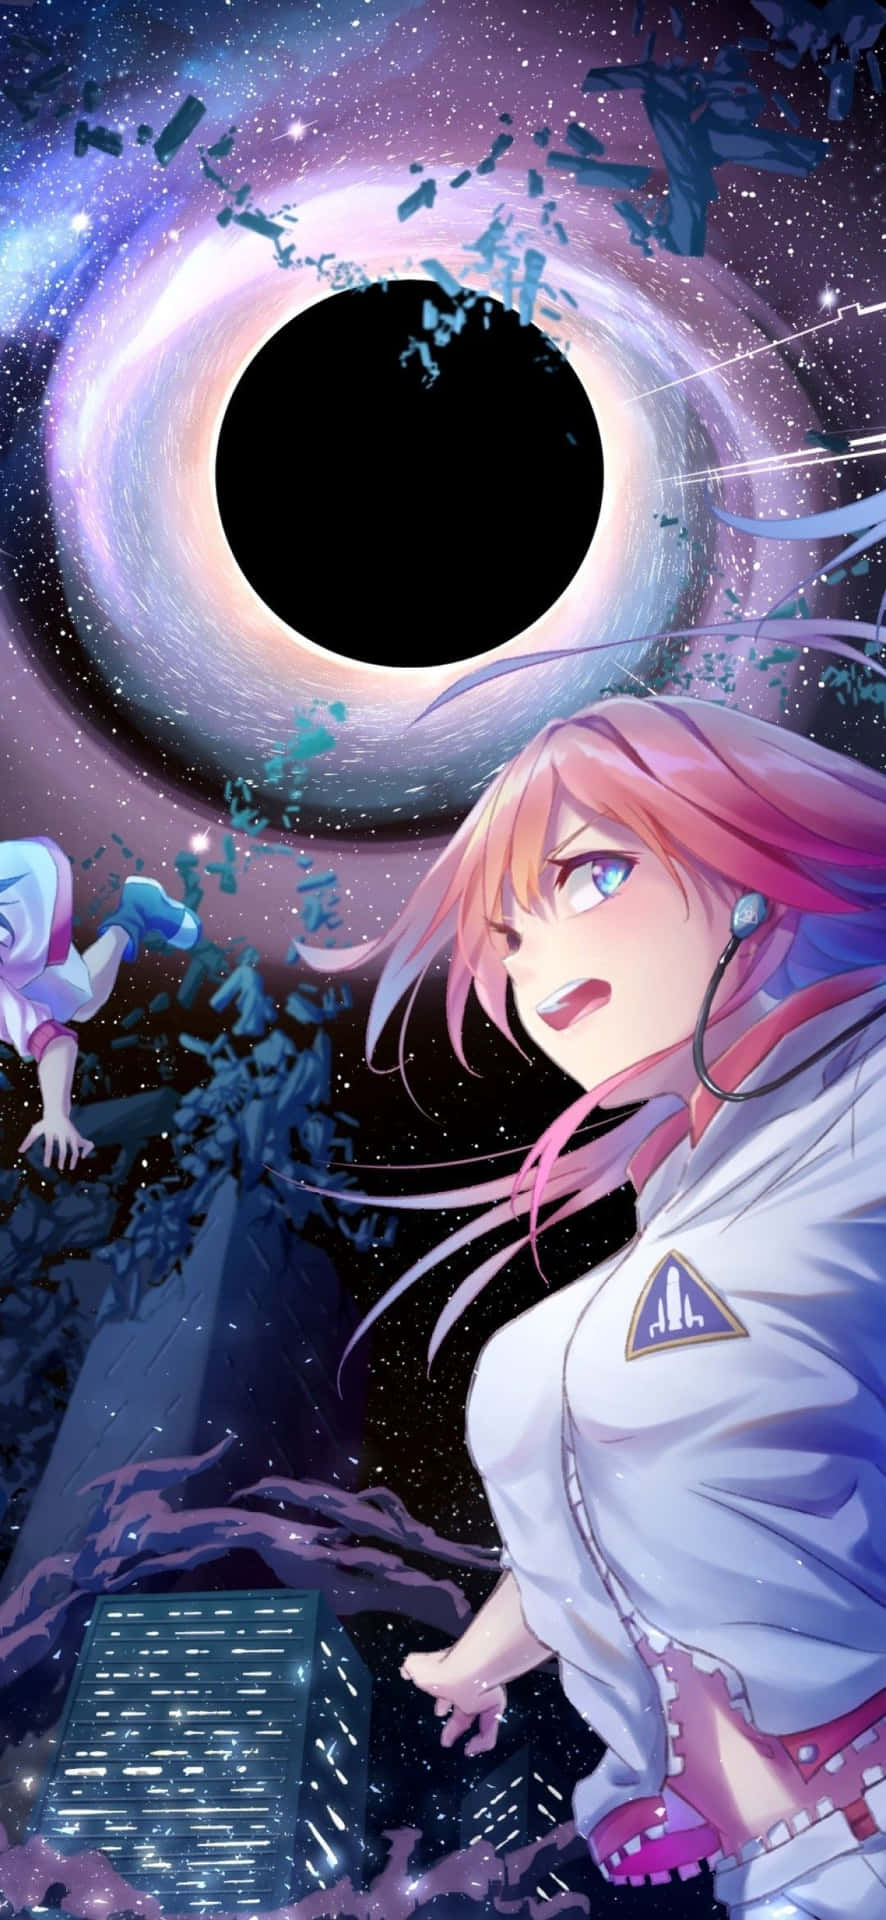 Vonder Fantasie Zur Realität Eröffnet Animecore Eine Ganz Neue Welt Voller Möglichkeiten. Wallpaper